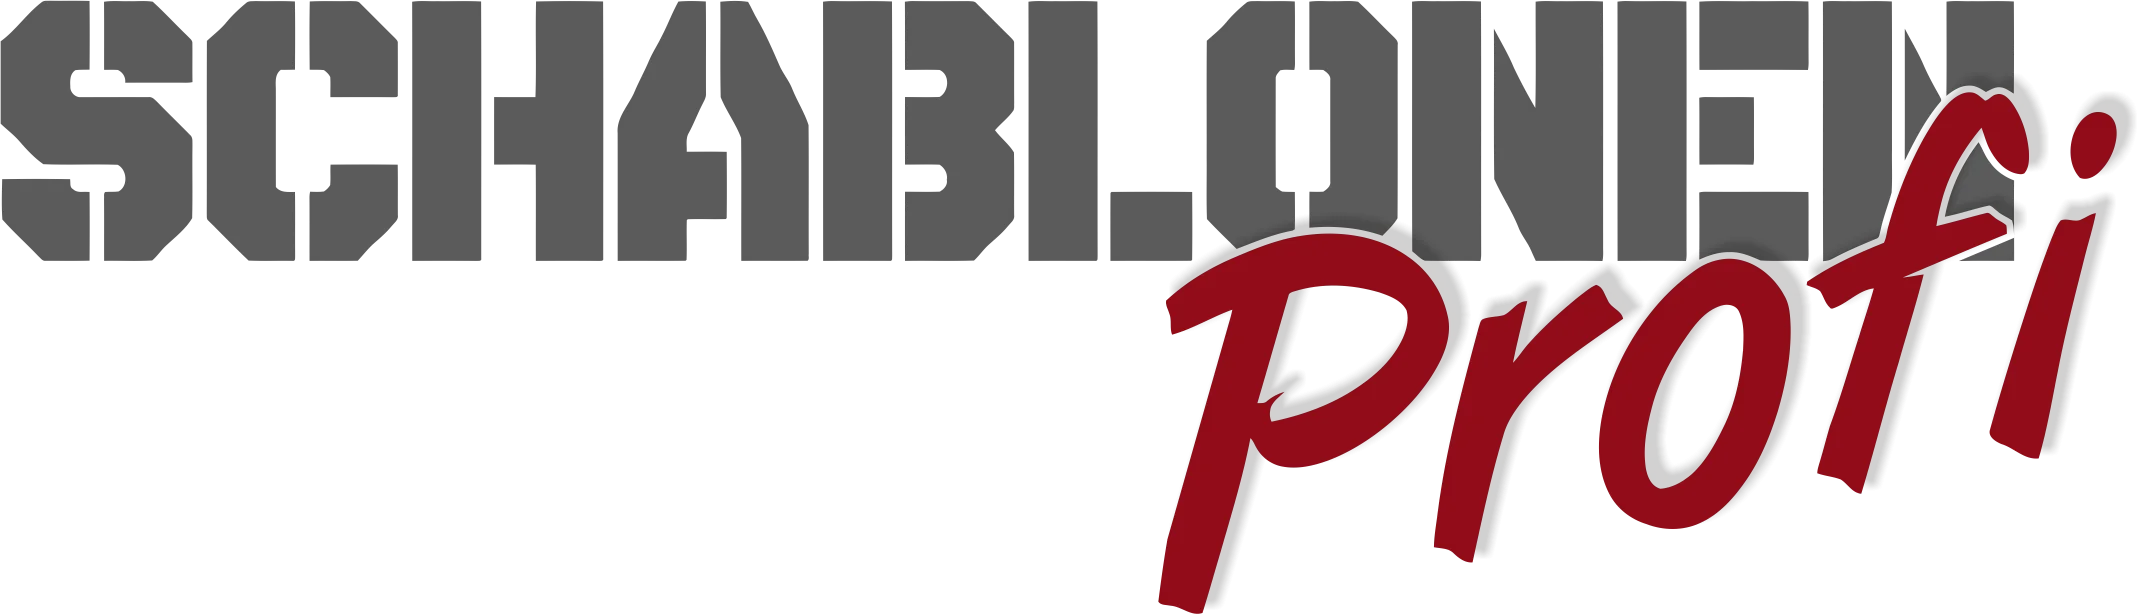 SchablonenProfi-Logo